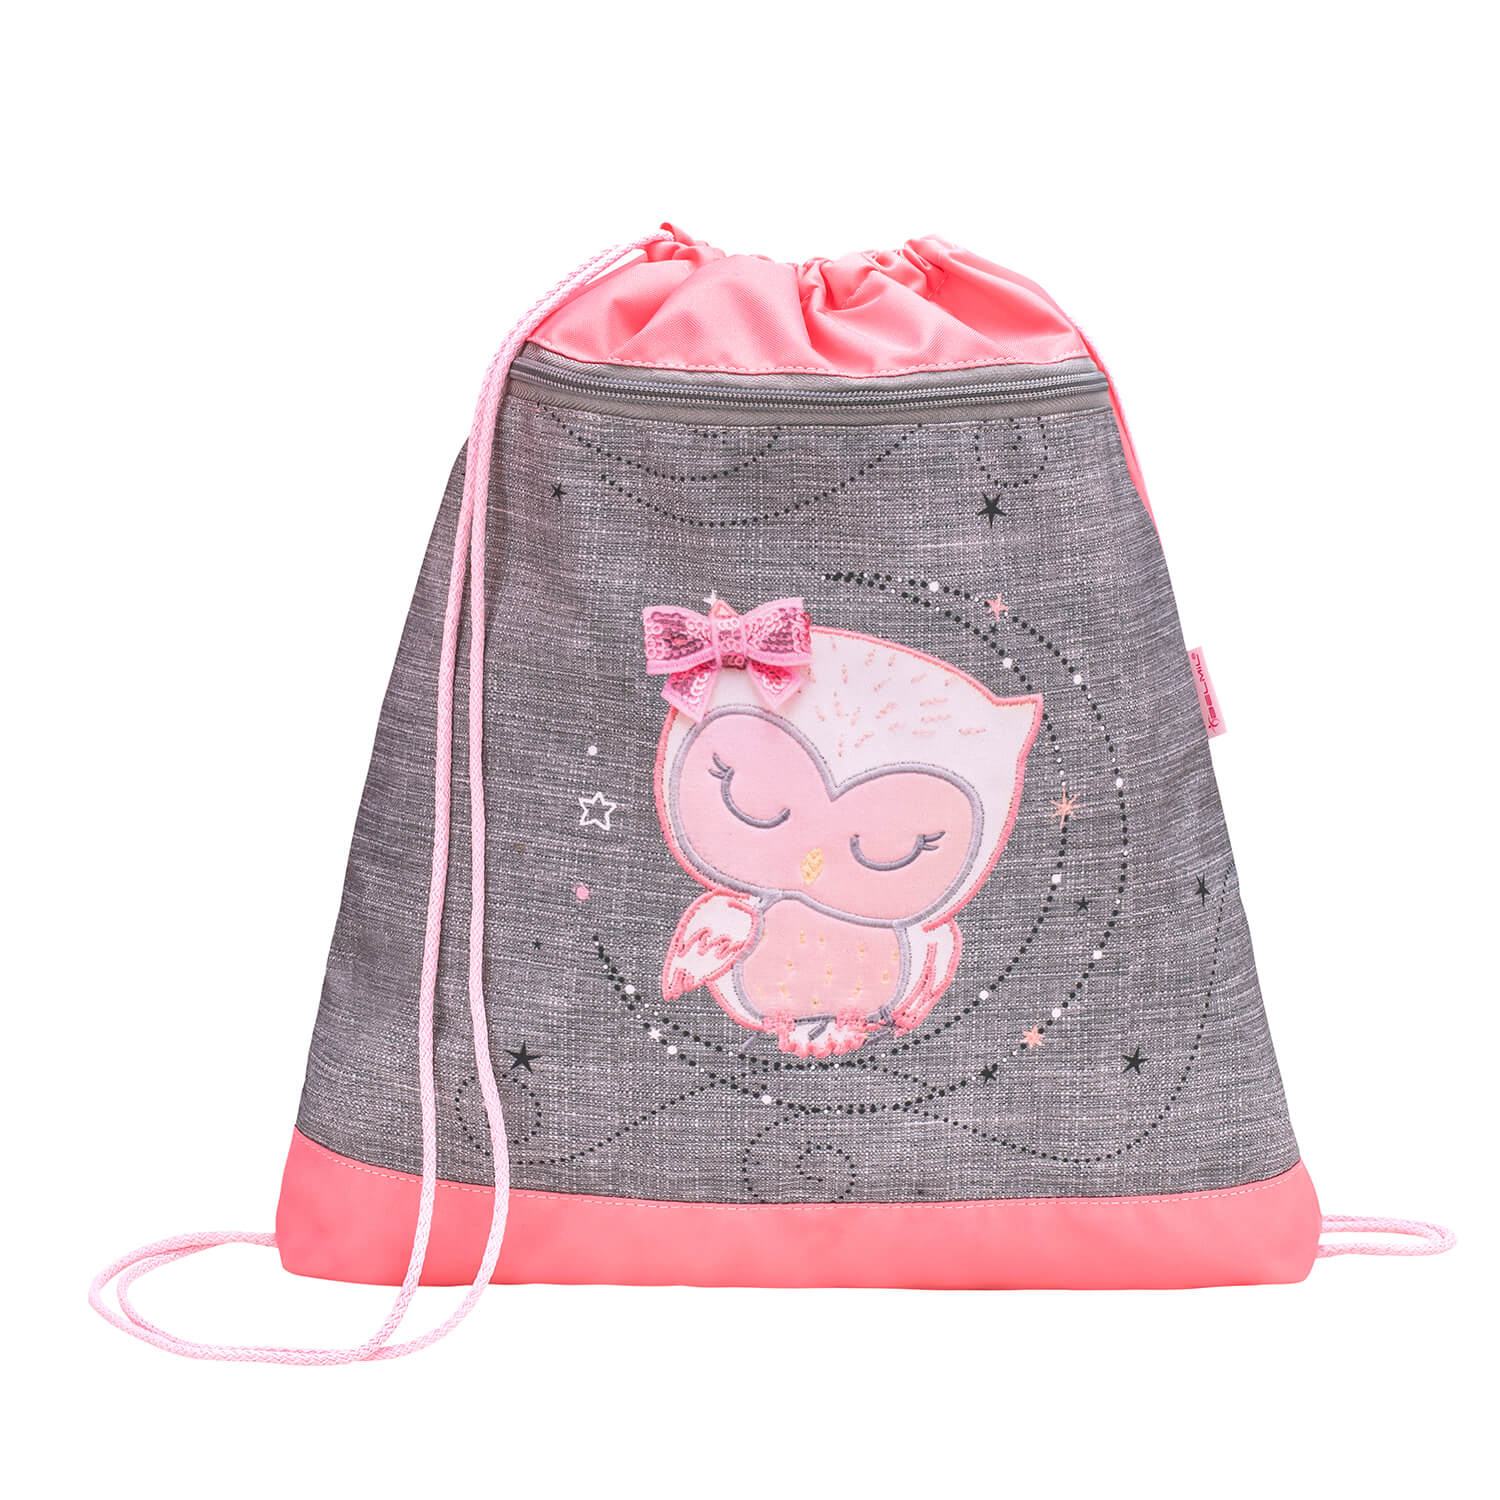 Compact Little Owl schoolbag set 4 pcs